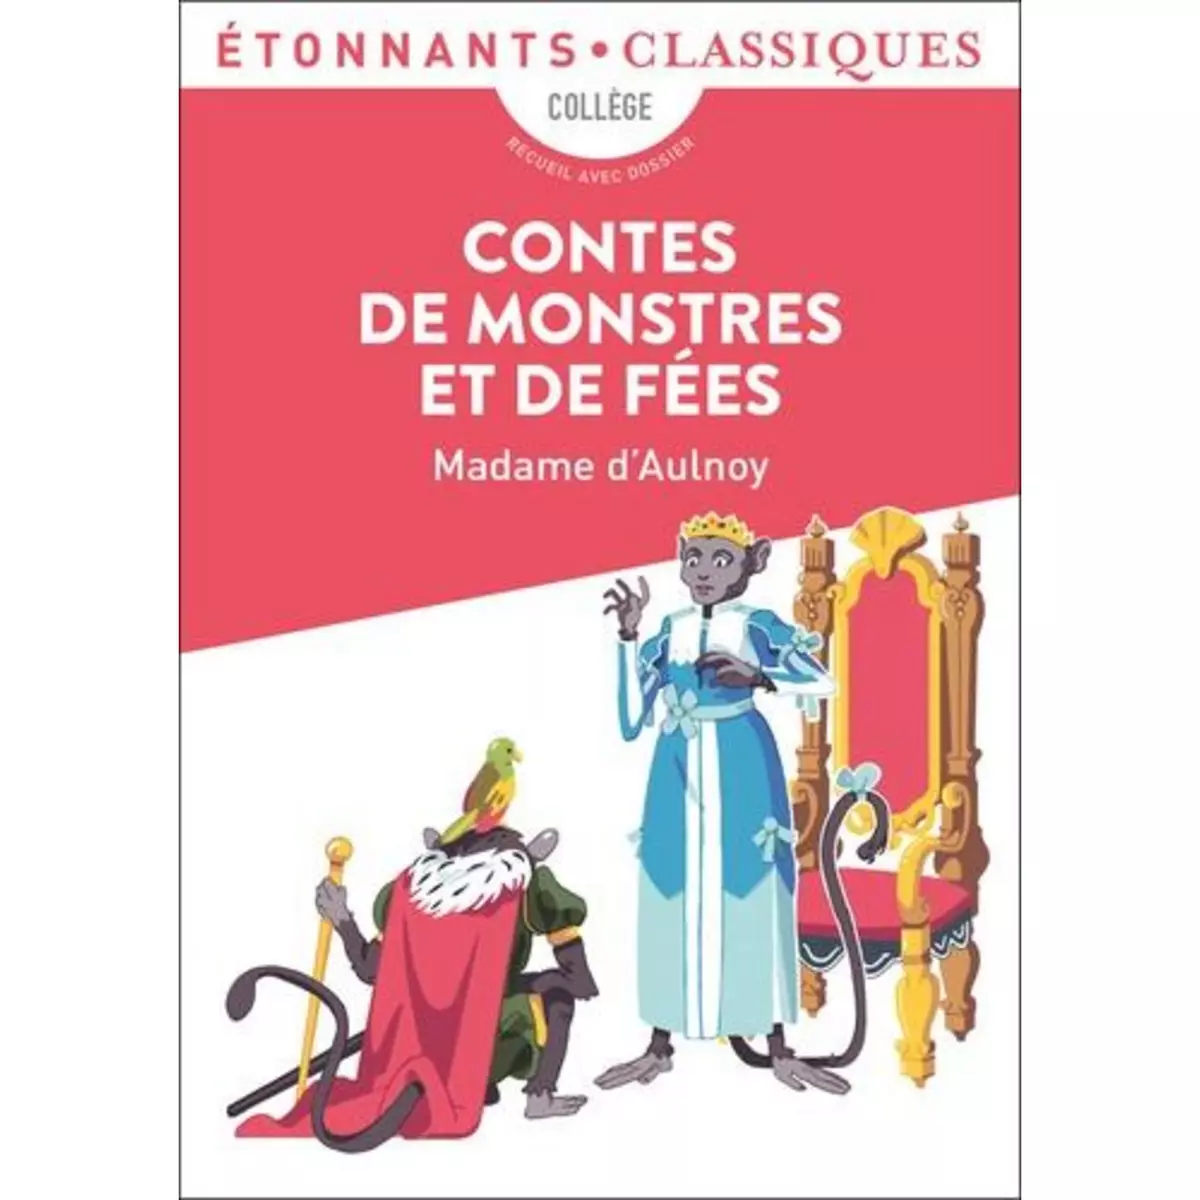  CONTES DE MONSTRES ET DE FEES, Madame d'Aulnoy